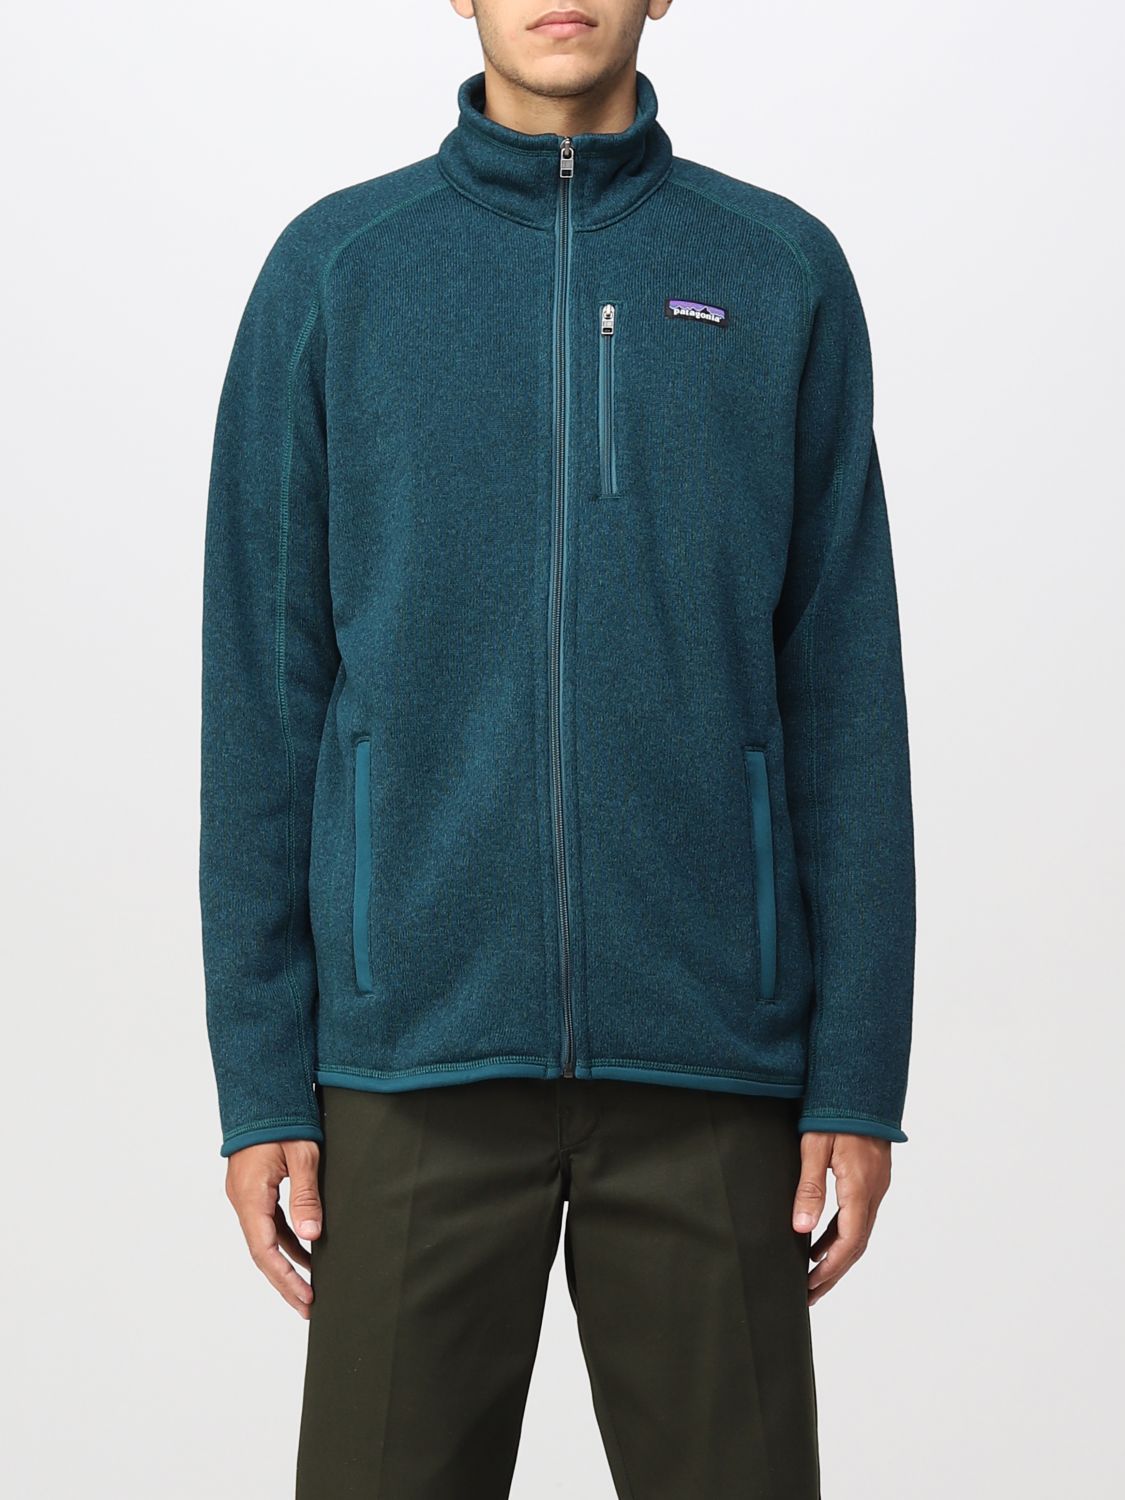 PATAGONIA: sweatshirt for man - Green | Patagonia sweatshirt 25528 ...